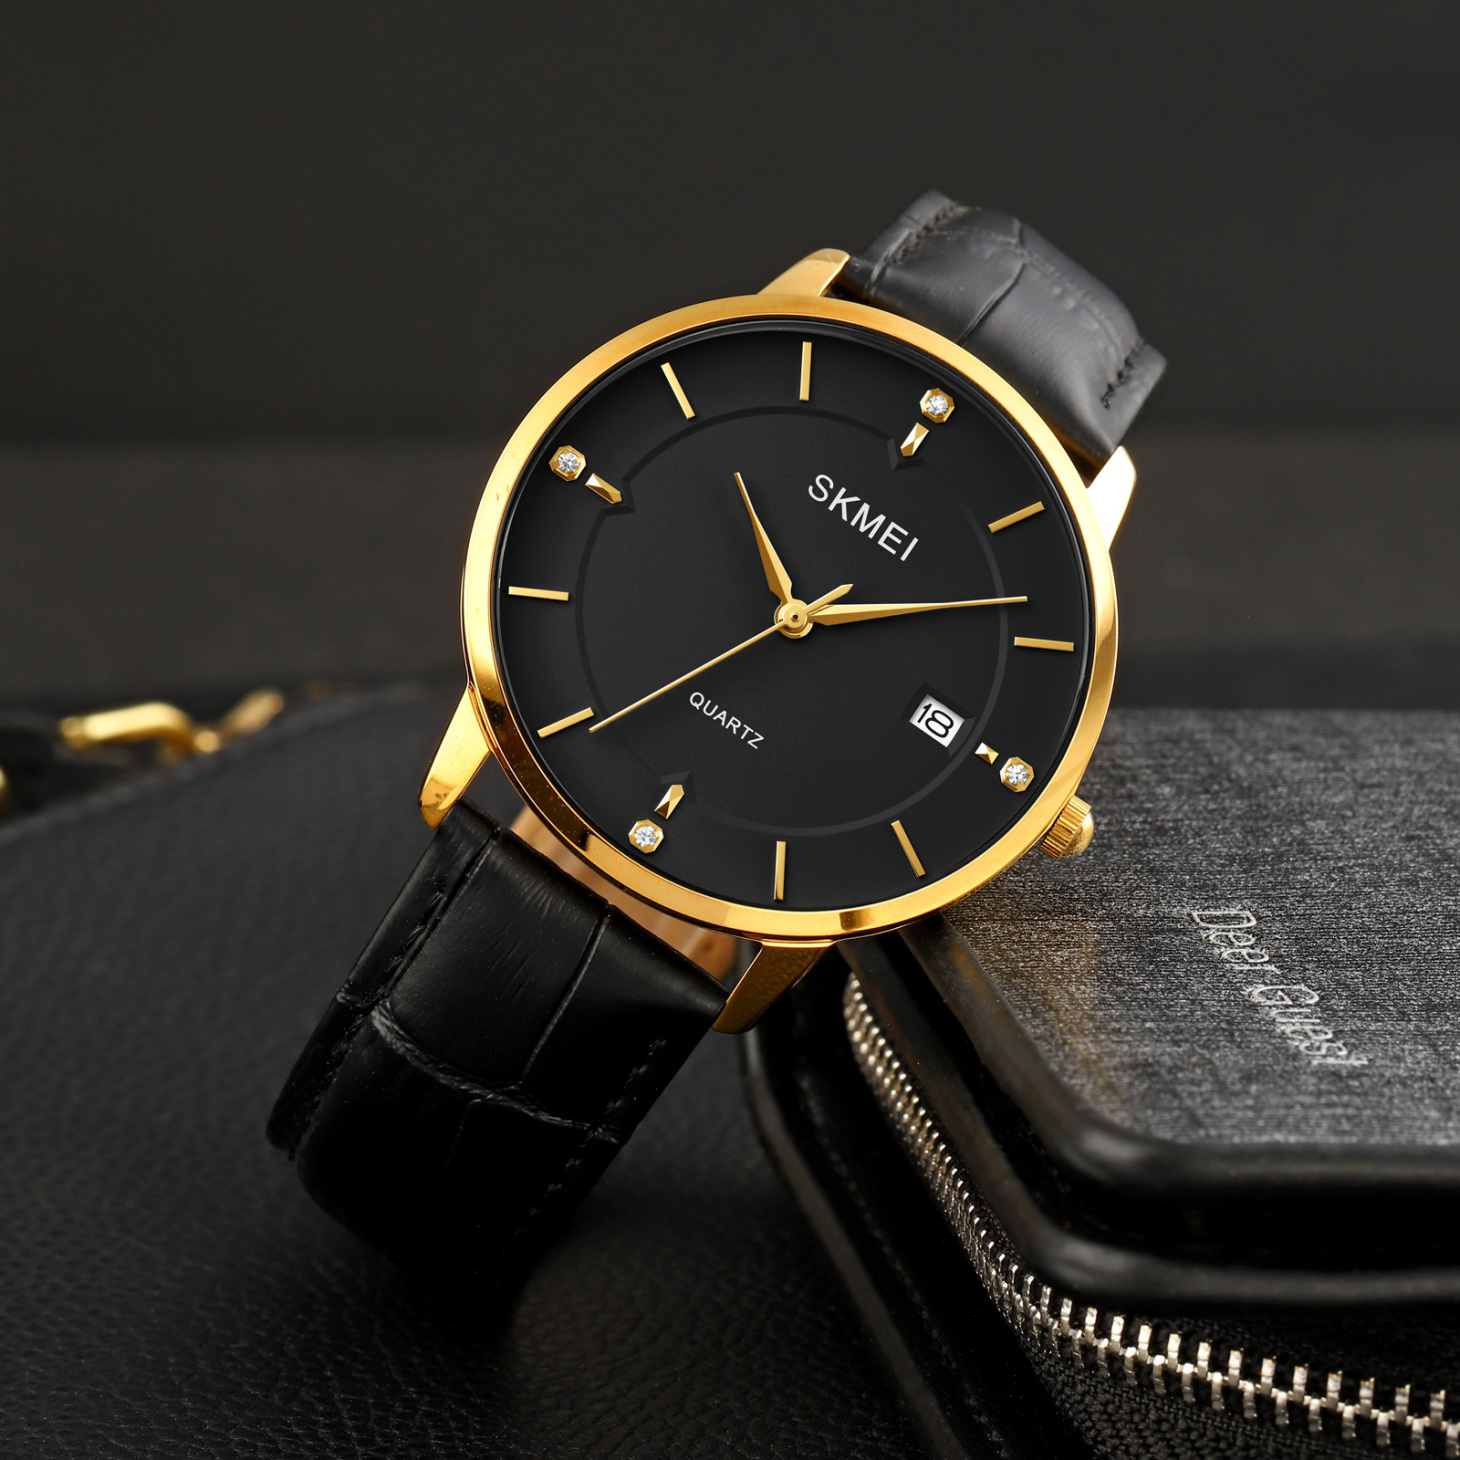  ساعت اسکمی 1801 طلایی مشکی 